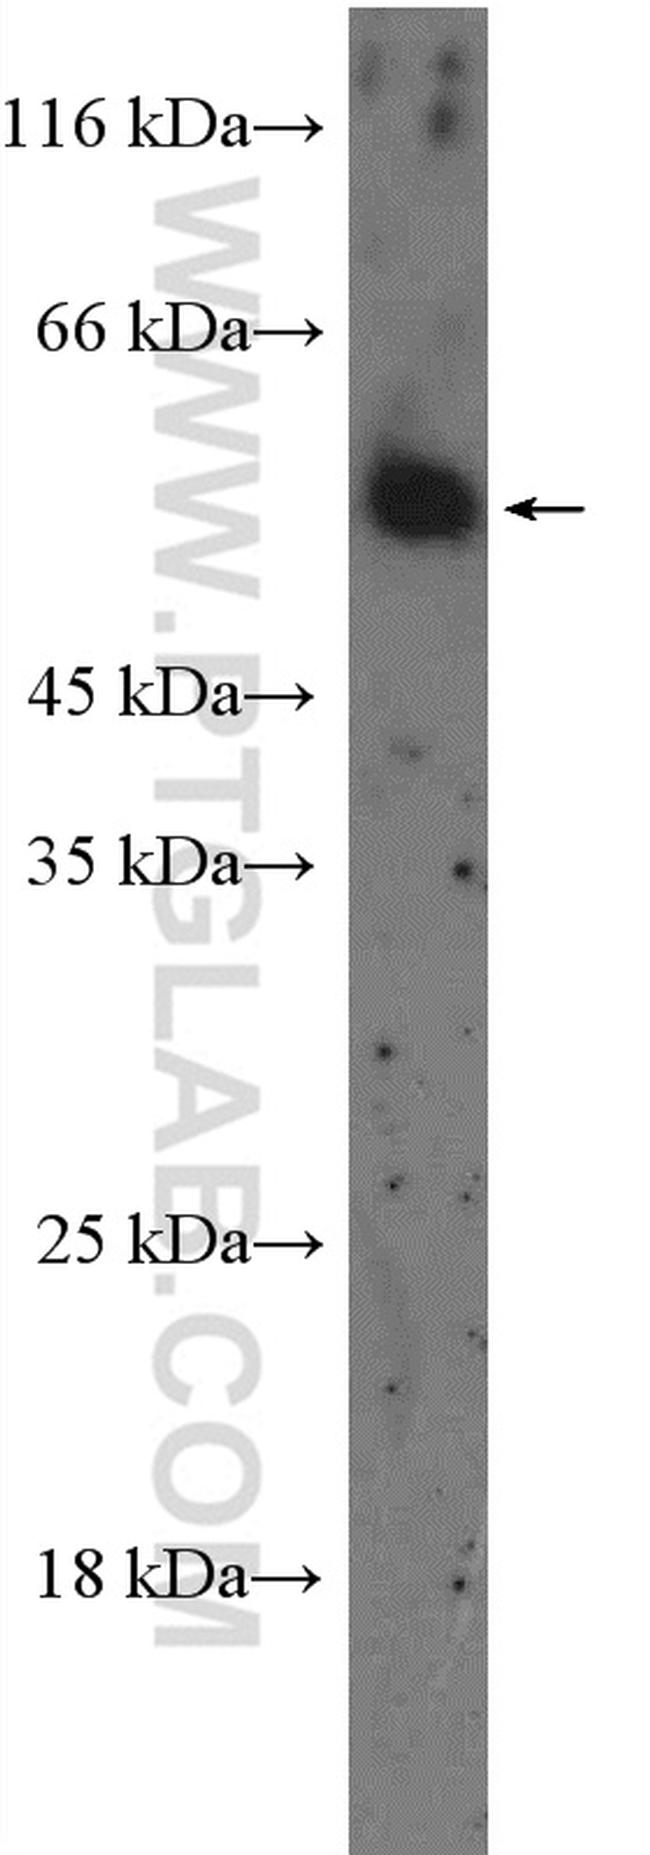 HTR2B Antibody in Western Blot (WB)